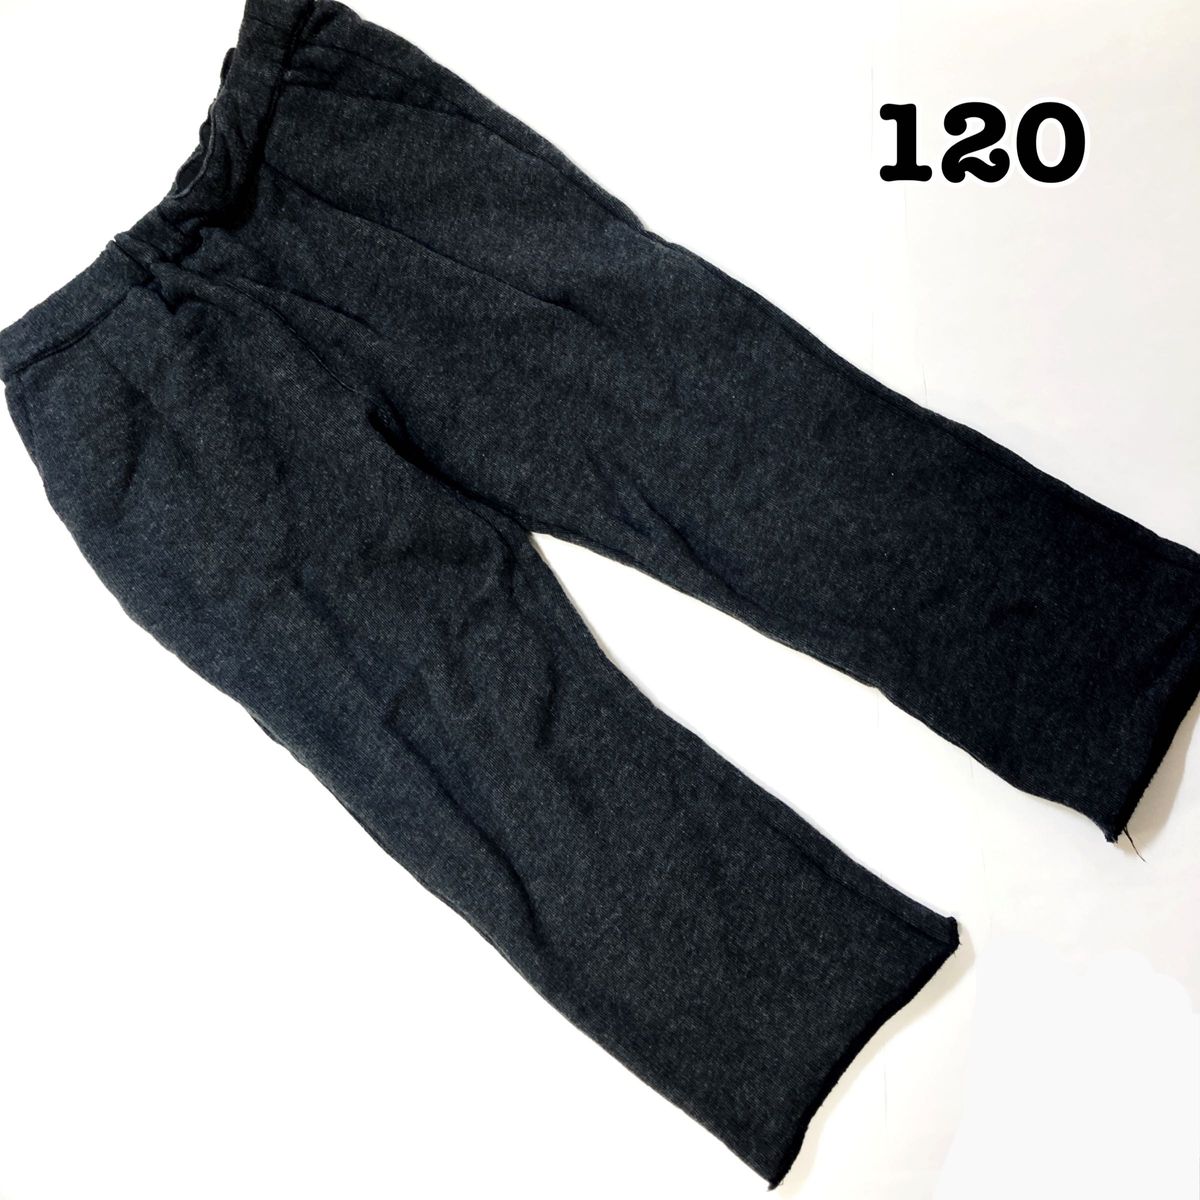 【120】アーバンリサーチ ニットパンツ ダークグレー スウェット イージーパンツ 男の子 女の子 長ズボン 大きめサイズ